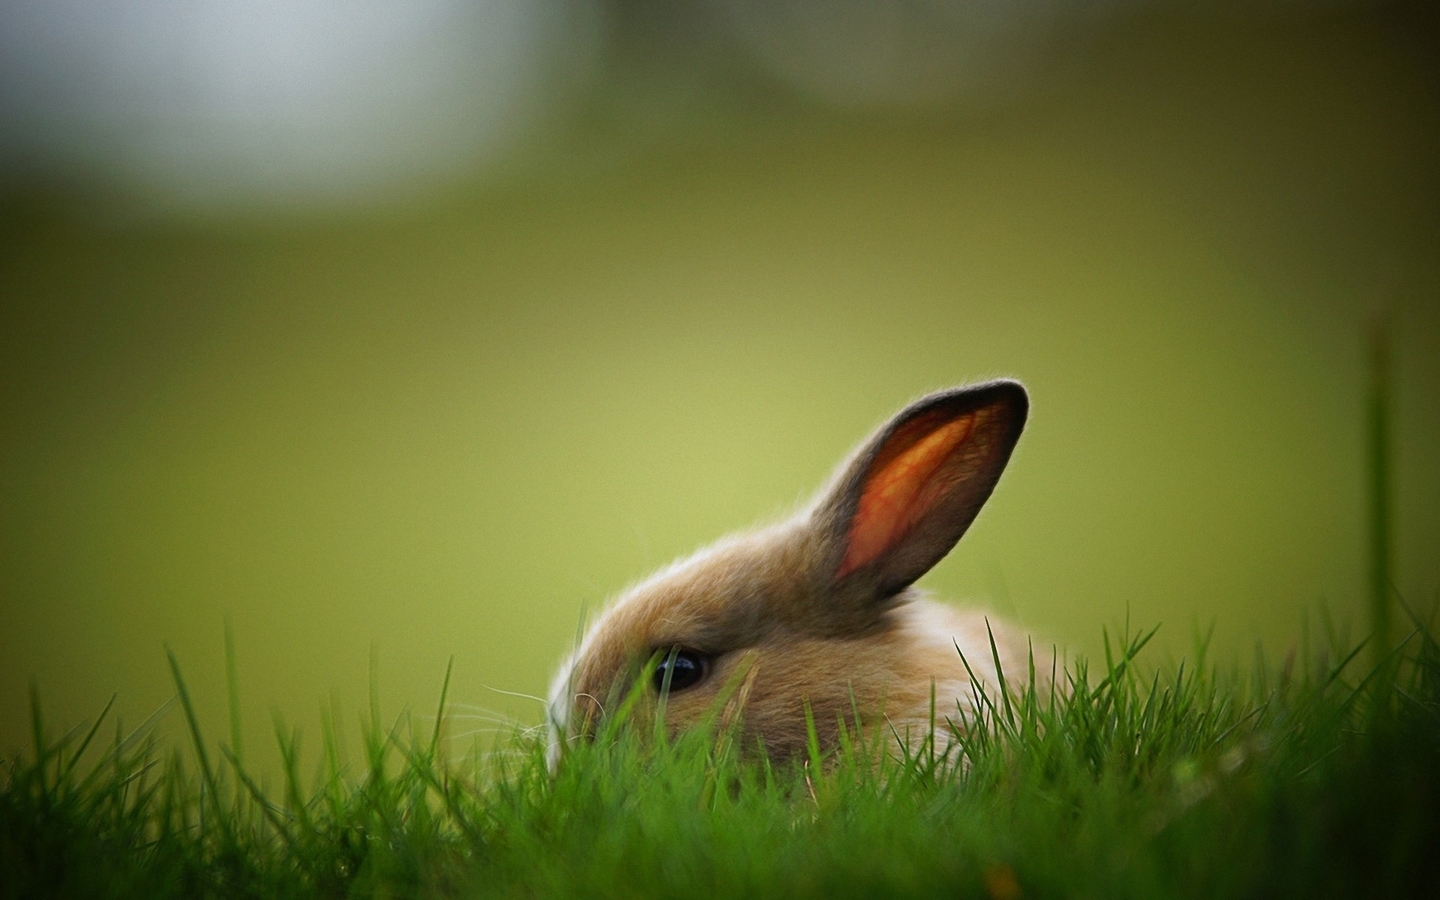 Image: Rabbit, ears, eye, furry, profile, grass, green, fear